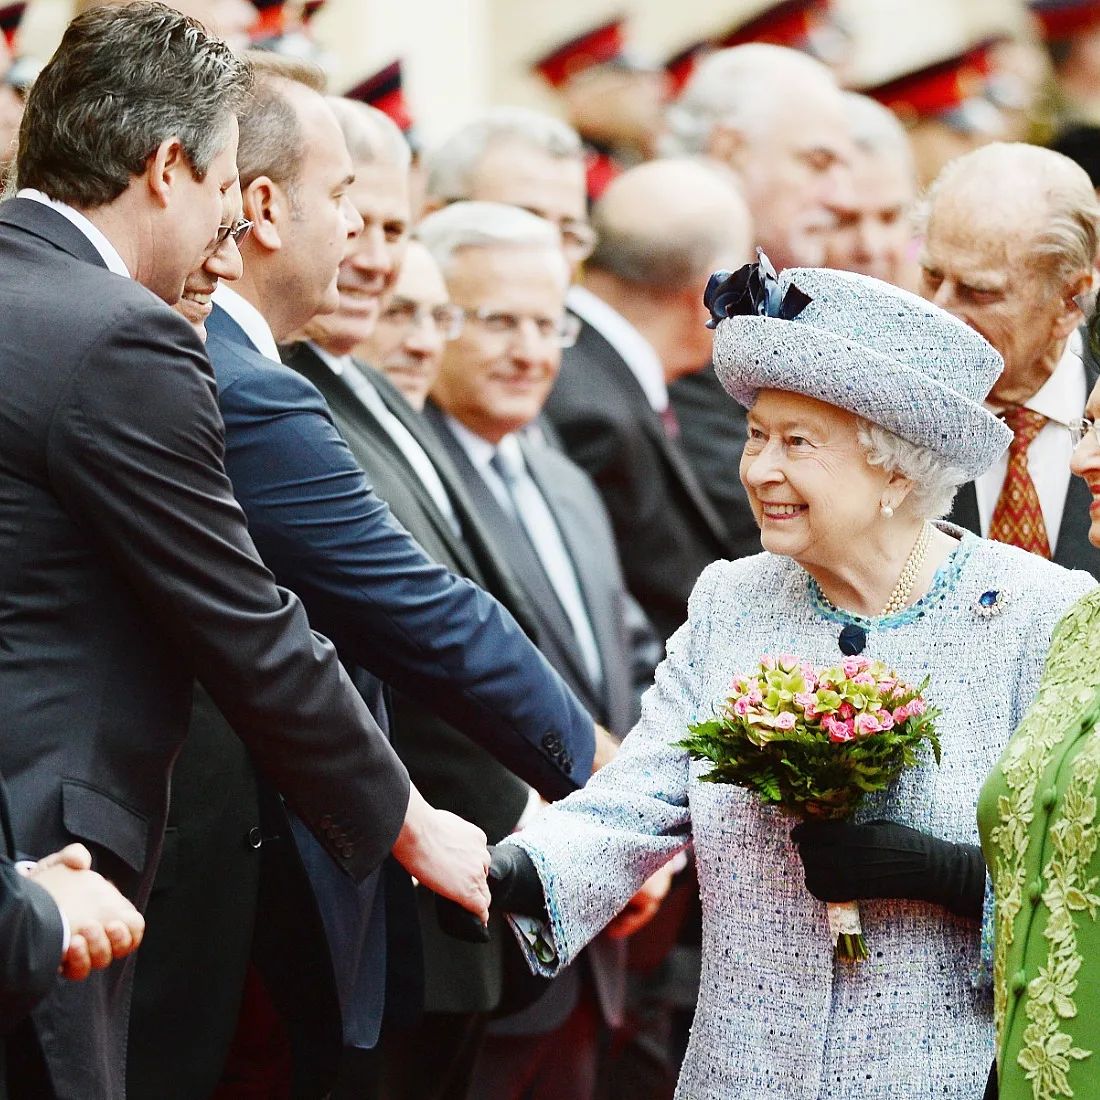 Morreu a rainha Isabel II. Reino Unido despede-se de uma figura admirável